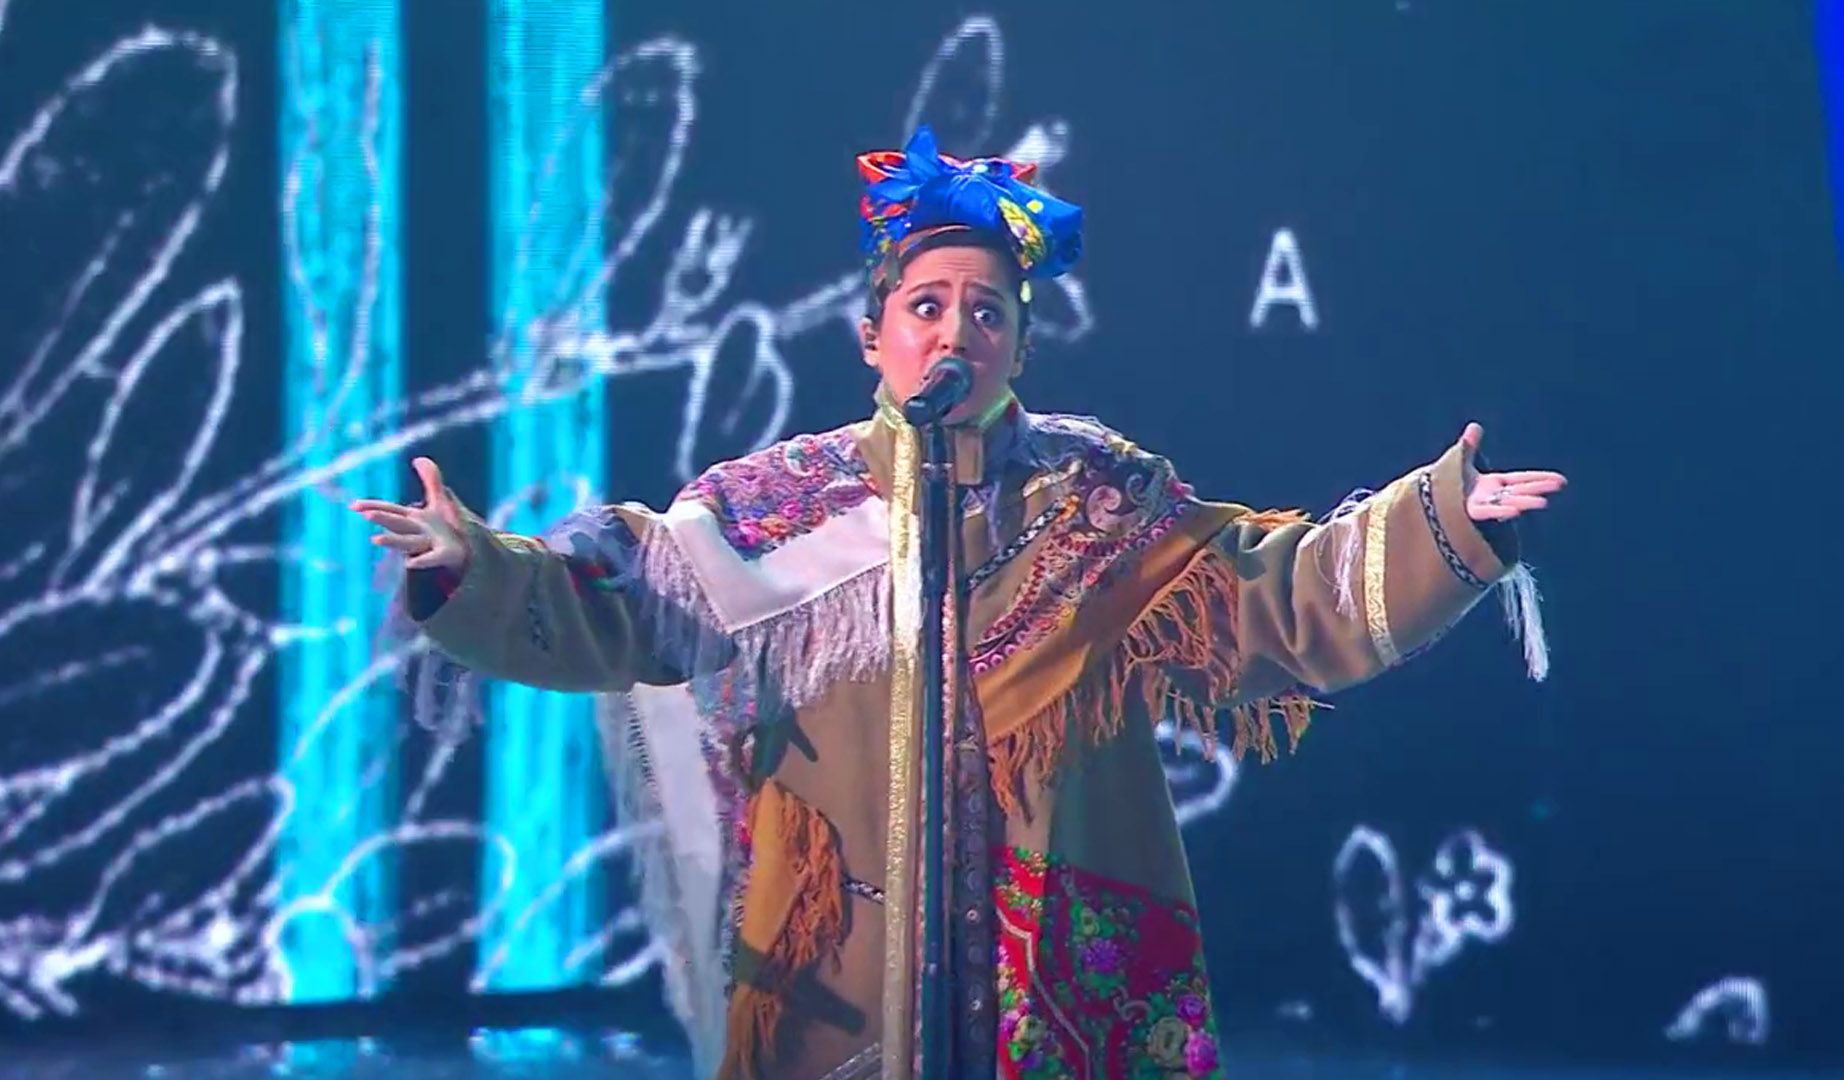 Un momento de la actuación de Manizha, la representante de Rusia, en Eurovisión 2021